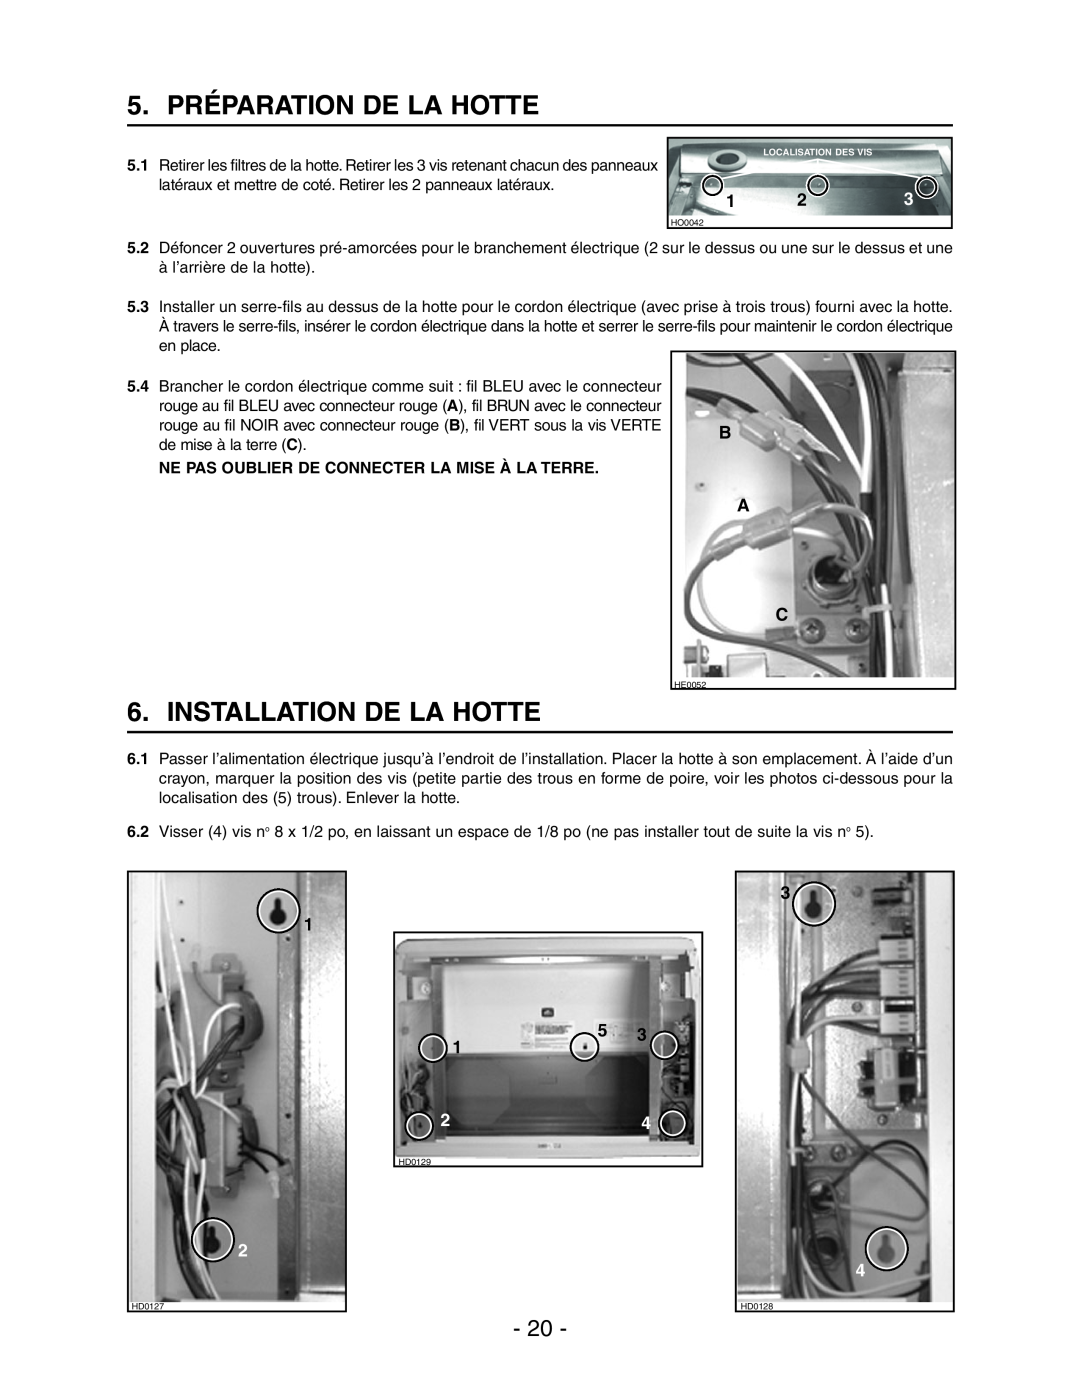 Broan Model E662 5. PRÉPARATION DE LA HOTTE, Installation De La Hotte, Ne Pas Oublier De Connecter La Mise À La Terre 